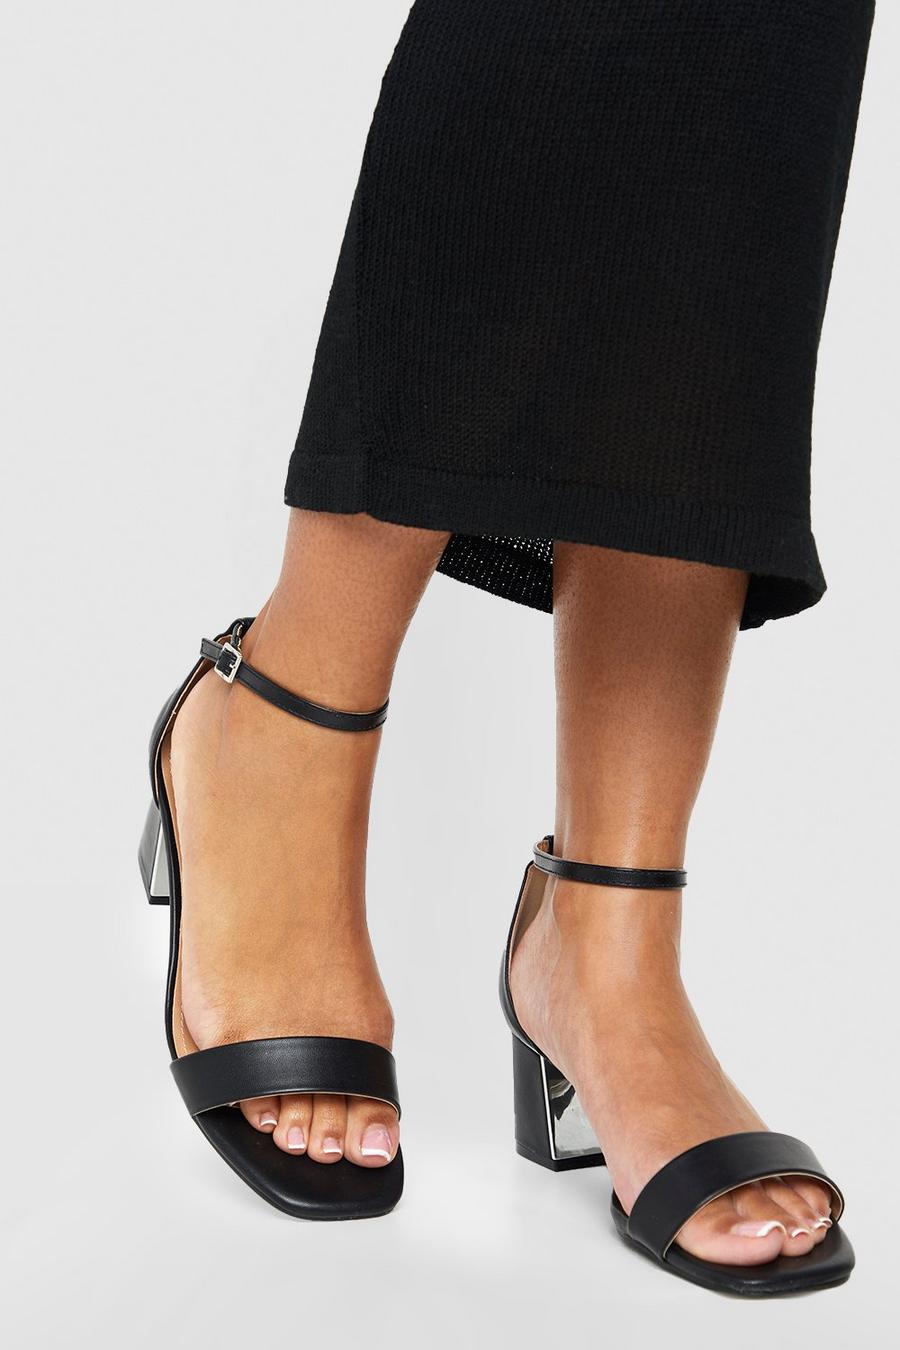 Sandali a calzata ampia con dettagli in metallo e tacco basso a blocco, Black